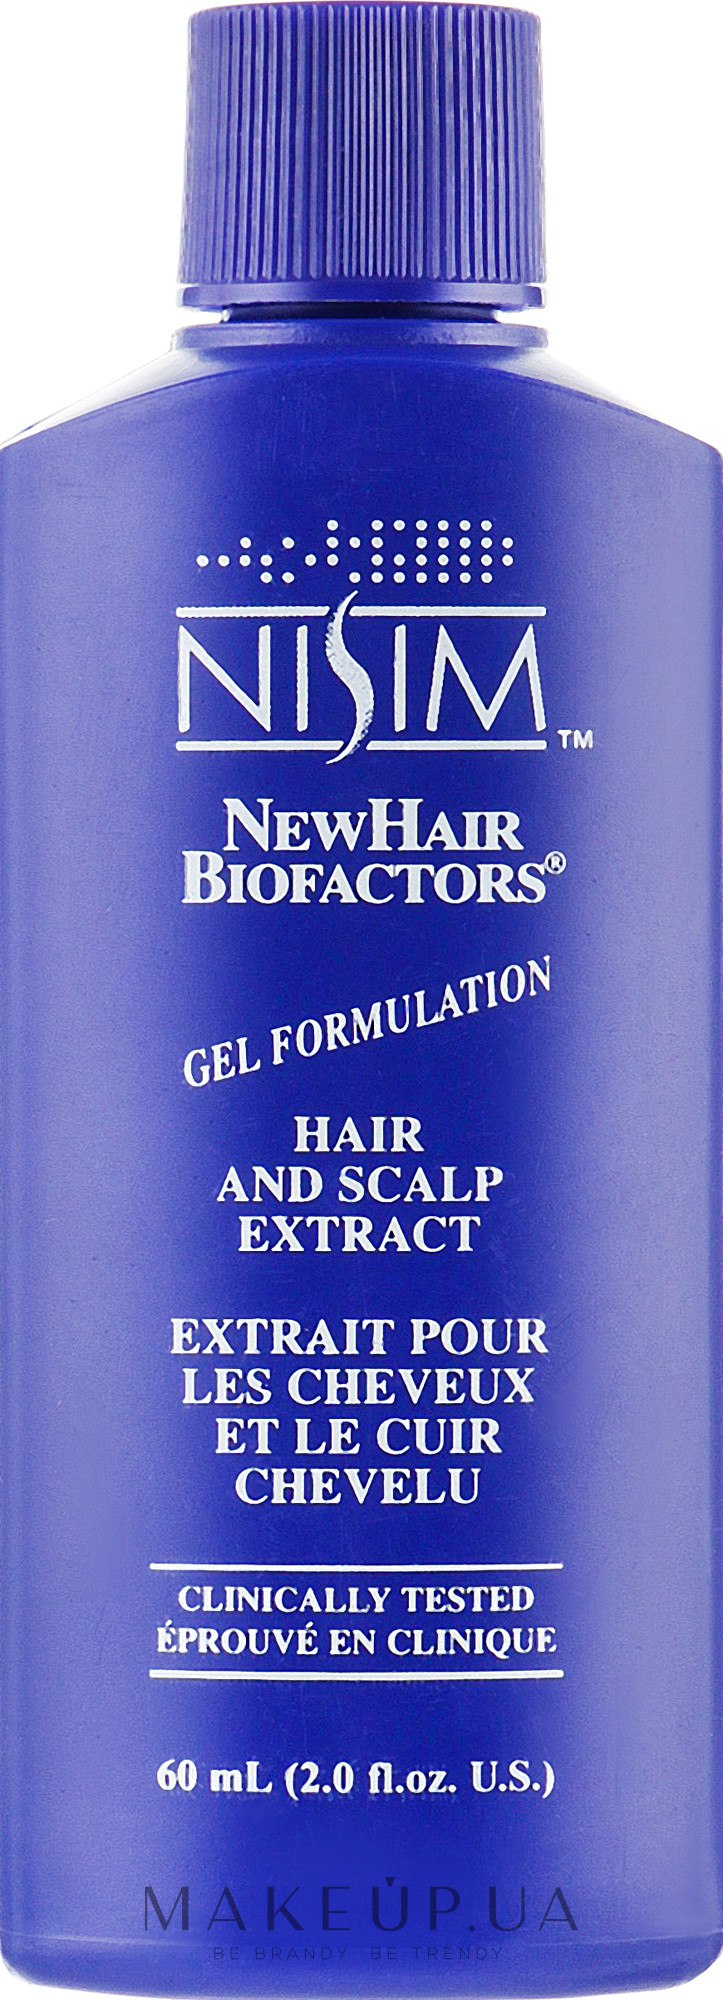 Экстракт-гель для волос и кожи головы - Nisim NewHair Biofactors Hair Scalp Extract AnaGain — фото 60ml